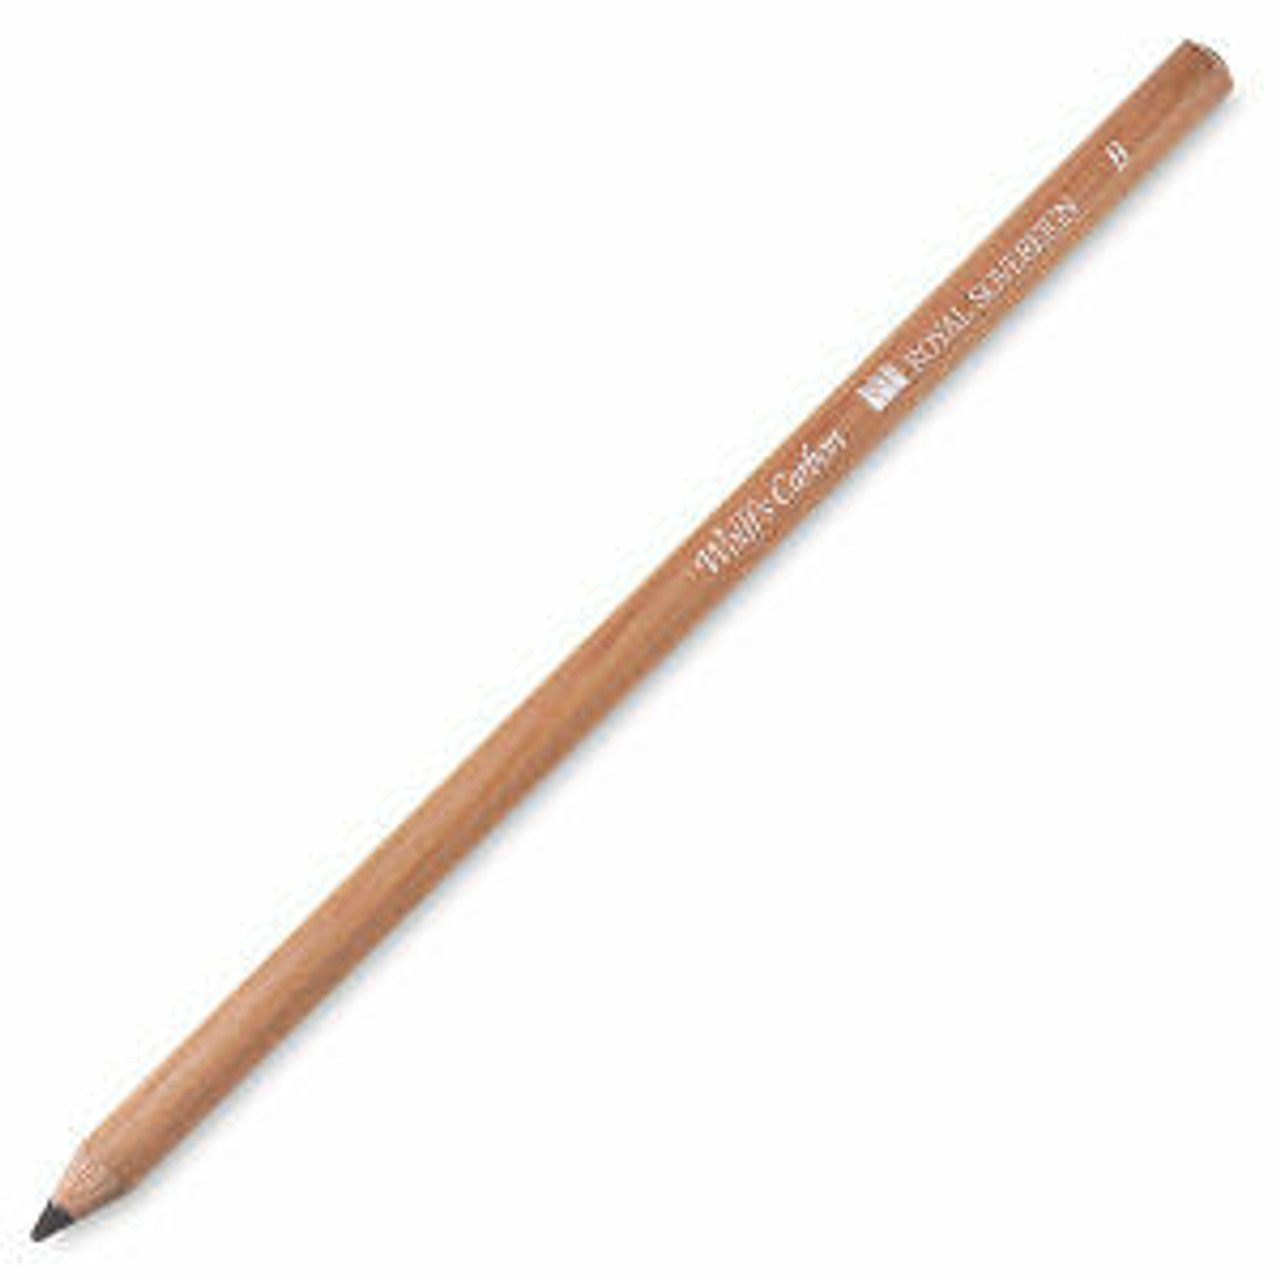 General Pencil - The Original Charcoal Drawing Pencil Set - Sam